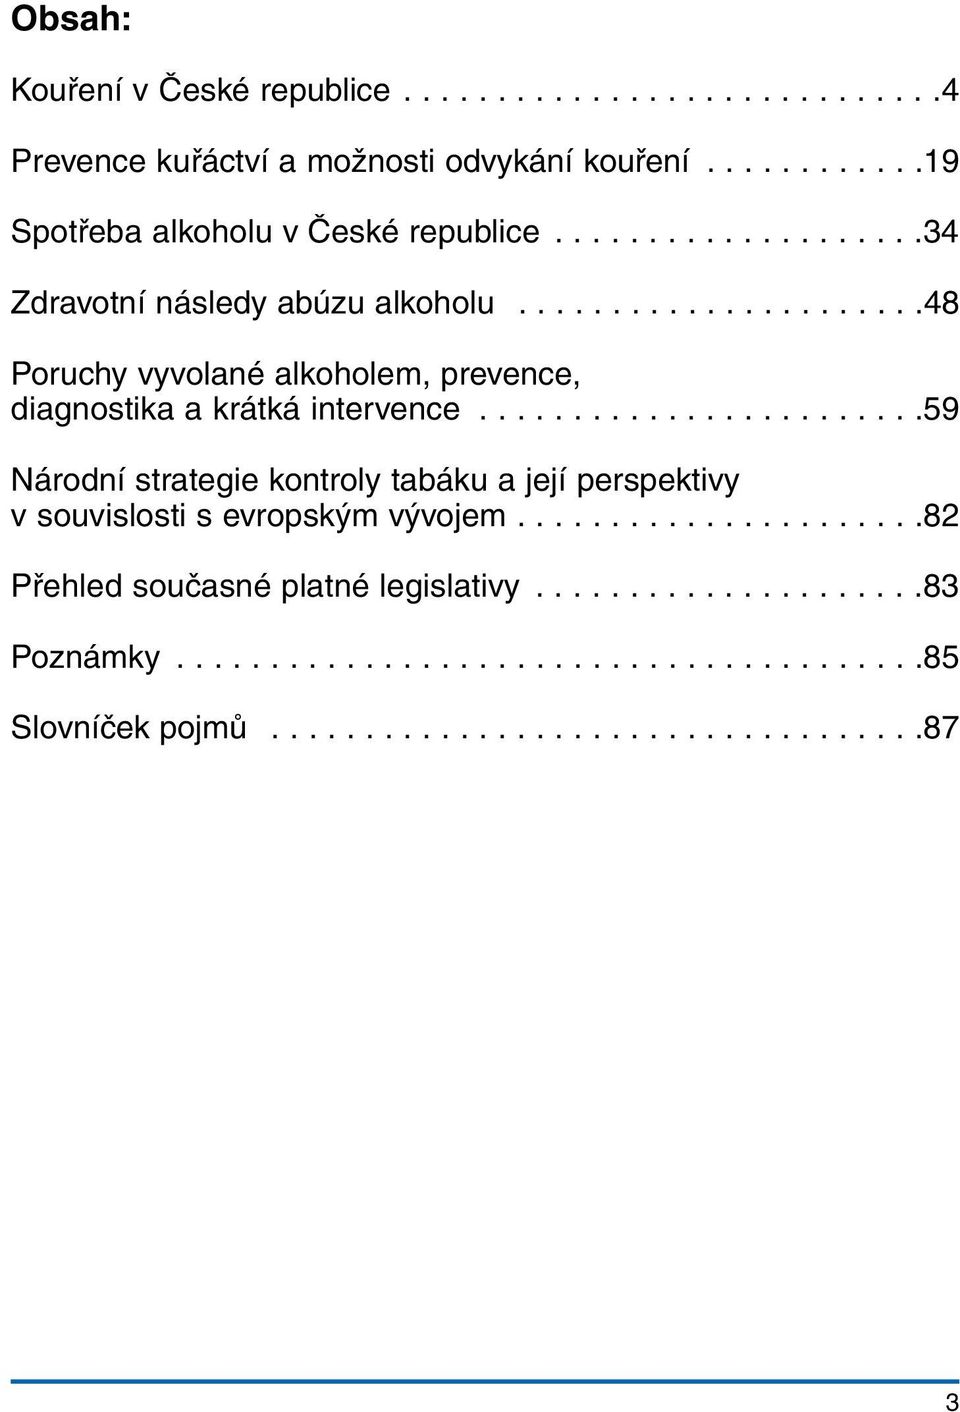 Kouření cigaret a pití alkoholu v České republice - PDF Stažení zdarma